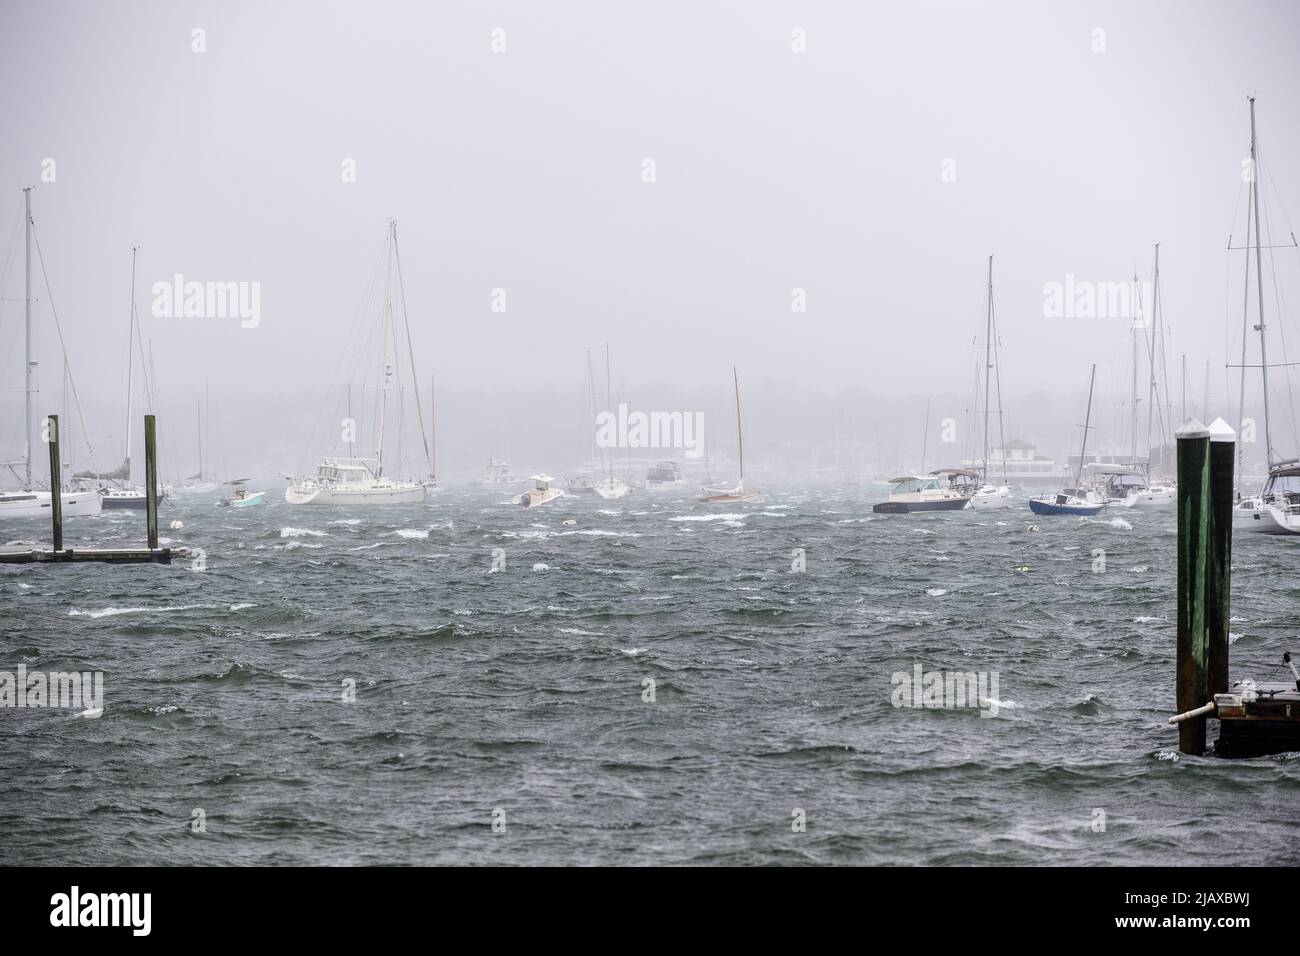 Foto d'archivio di Tropical Storm Henri dal 2021 a Newport, Rhode Island. Vista delle barche a vela e dei moli durante una tempesta. Foto Stock